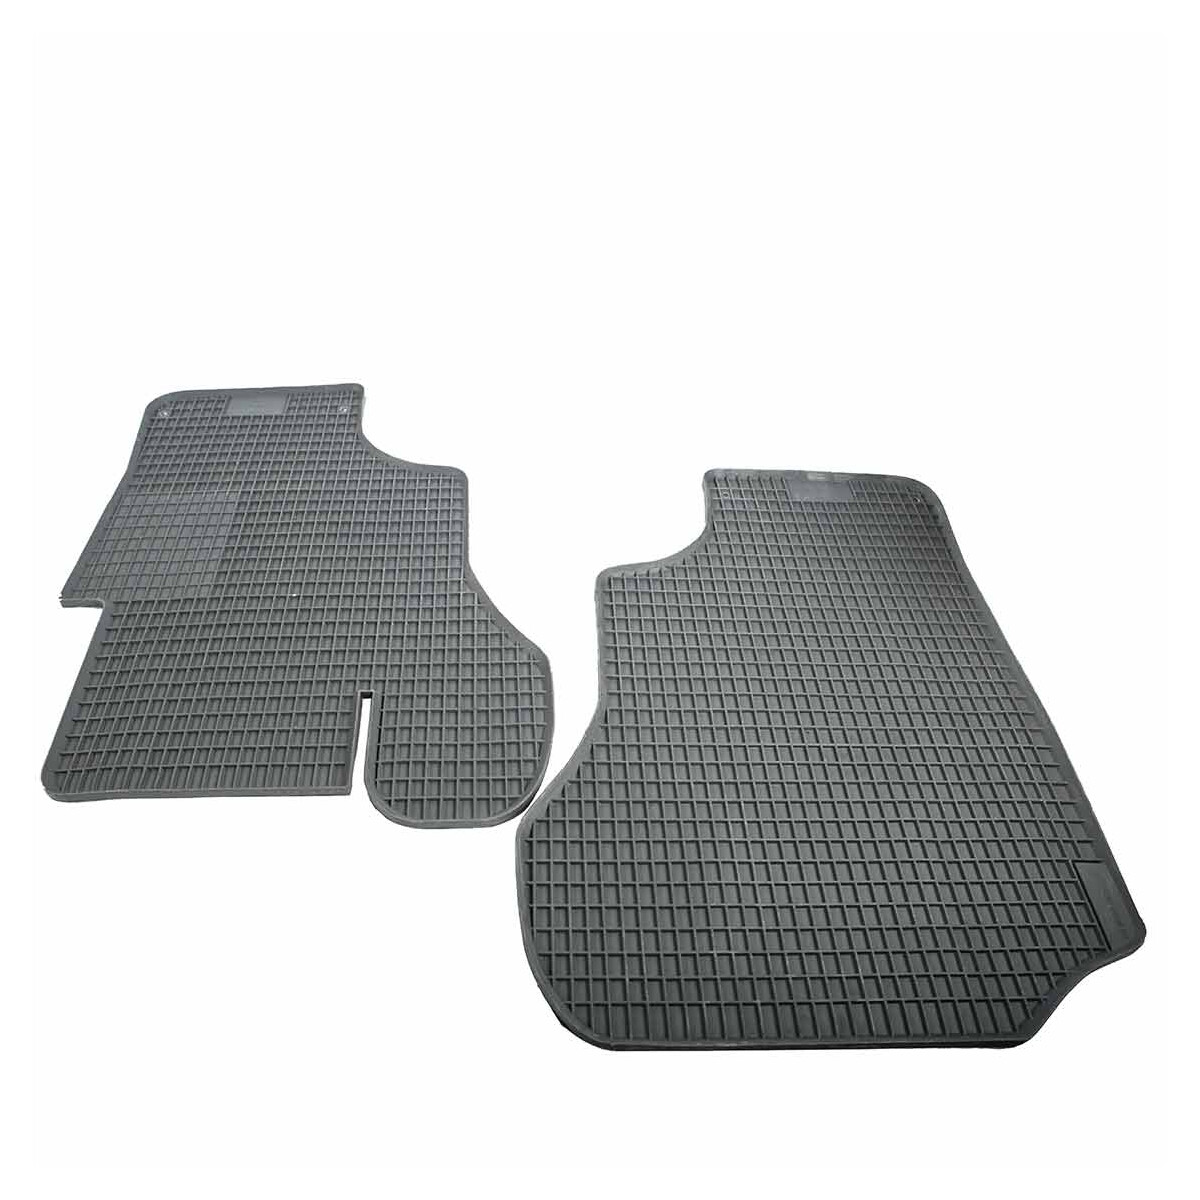 Pair of rubber mats T25 grey - BUS-ok.de, 57,20